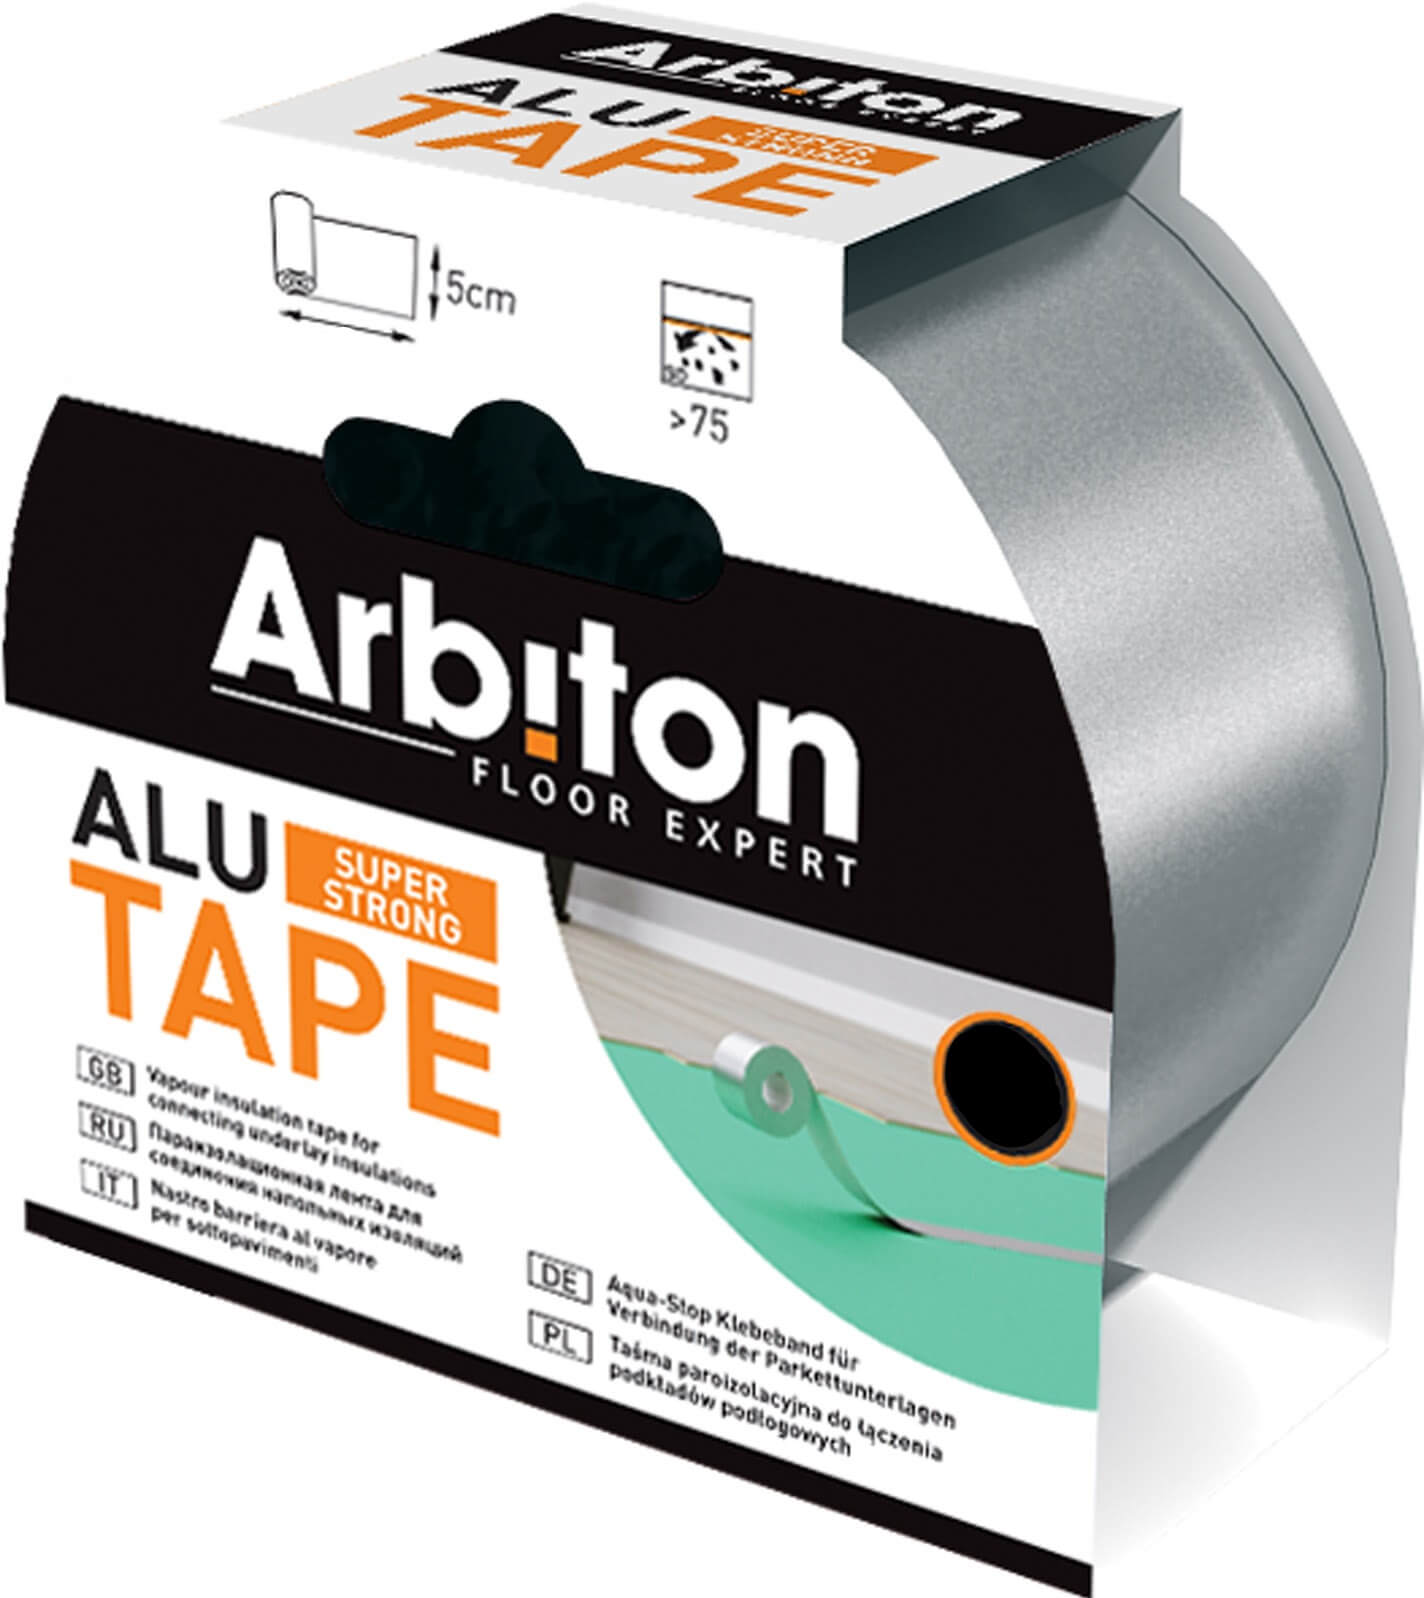 Alu Tape